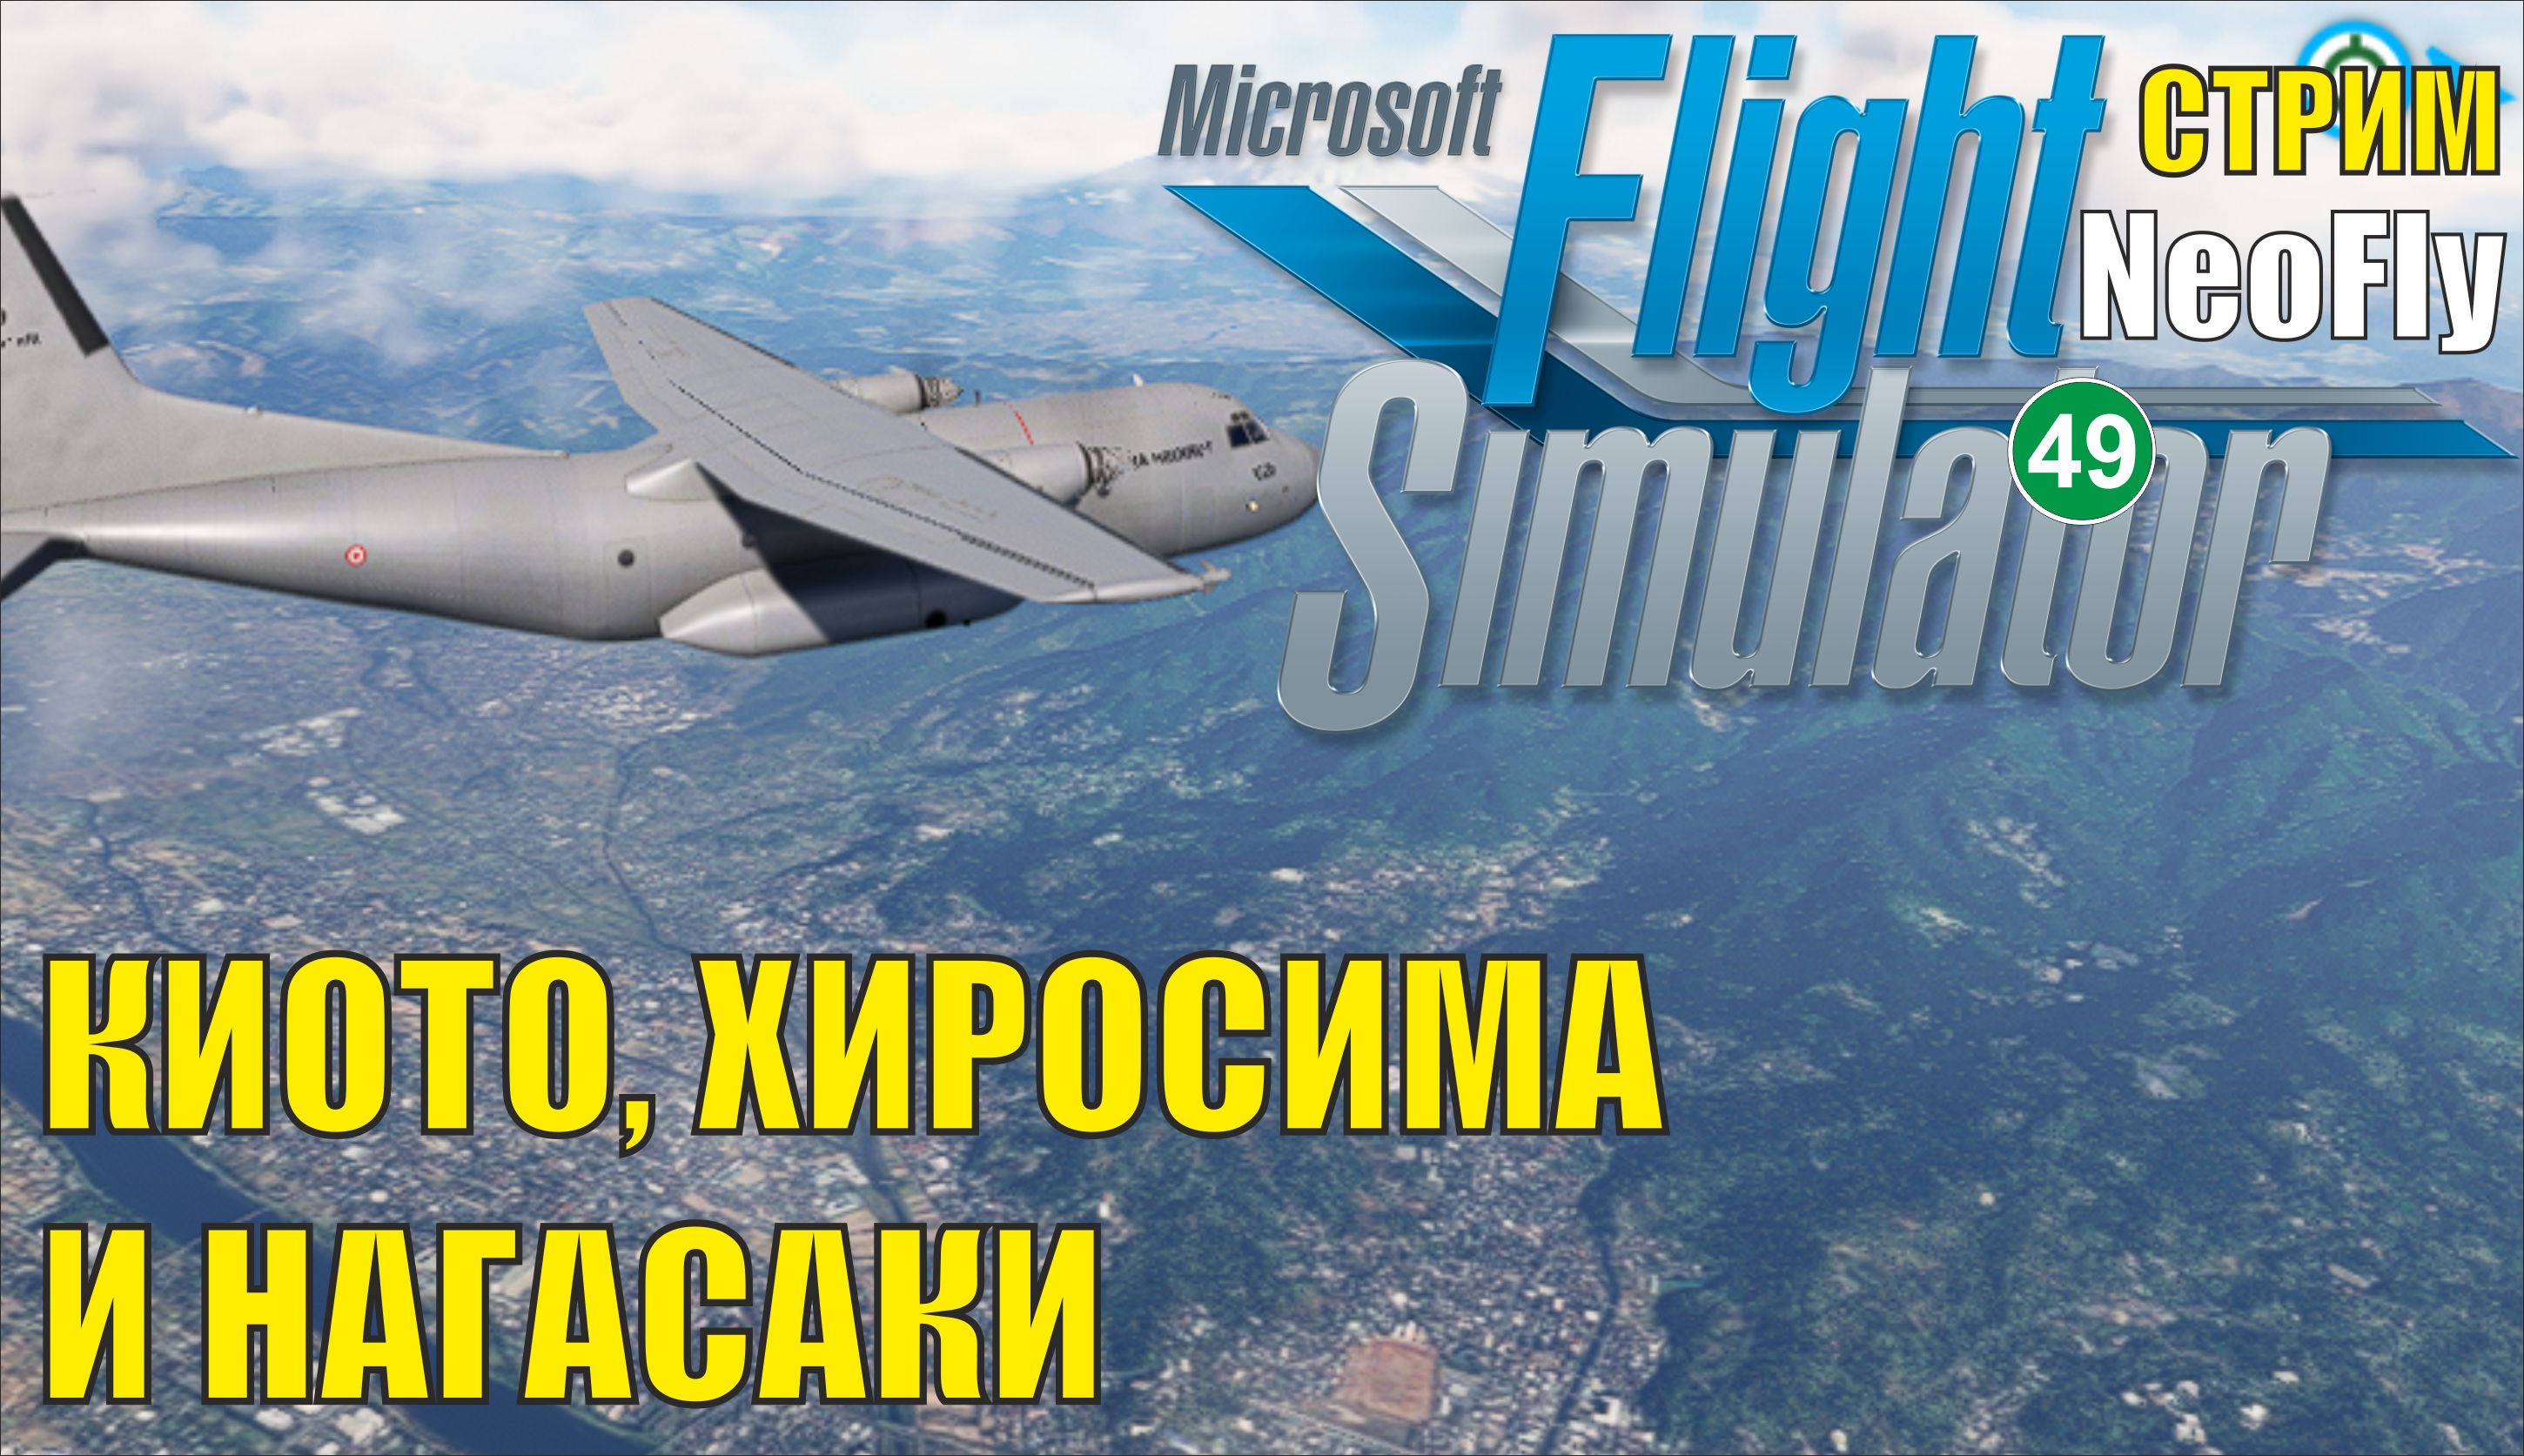 Microsoft Flight Simulator 2020 (NeoFly) - Киото, Хиросима и Нагасаки